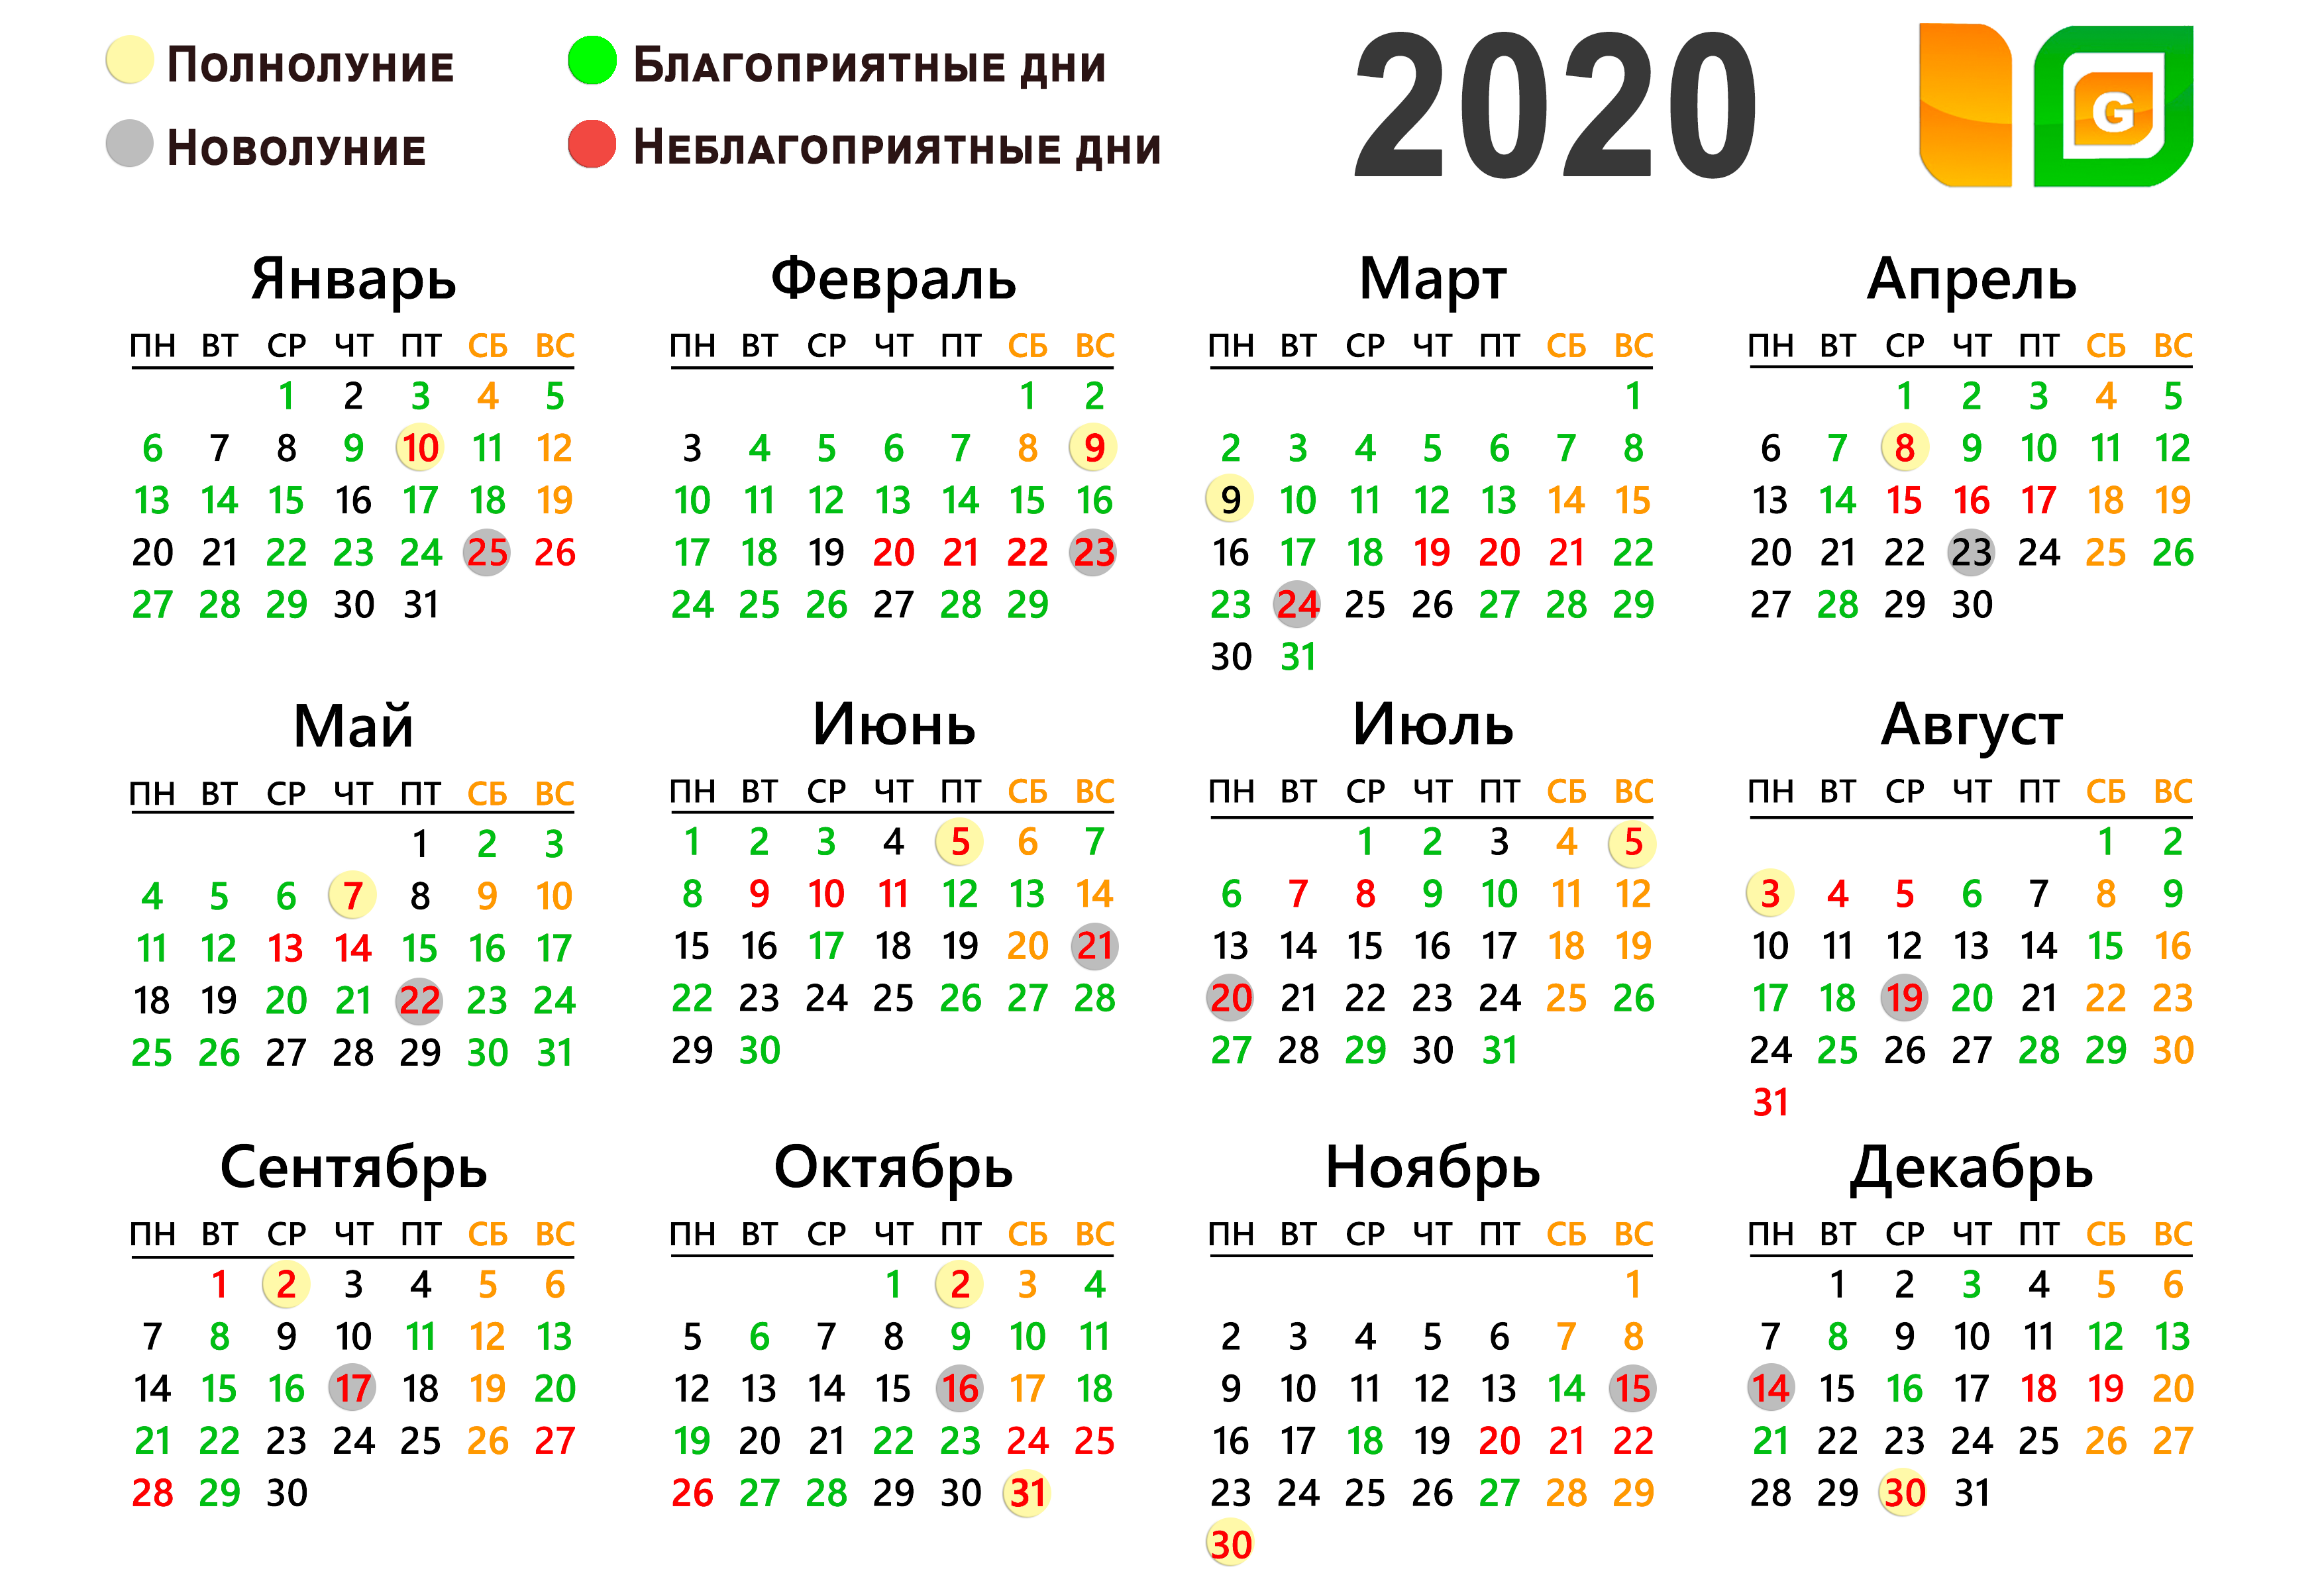 Лунный календарь повседневности: благоприятные дни для разных дел в сентябре 2021